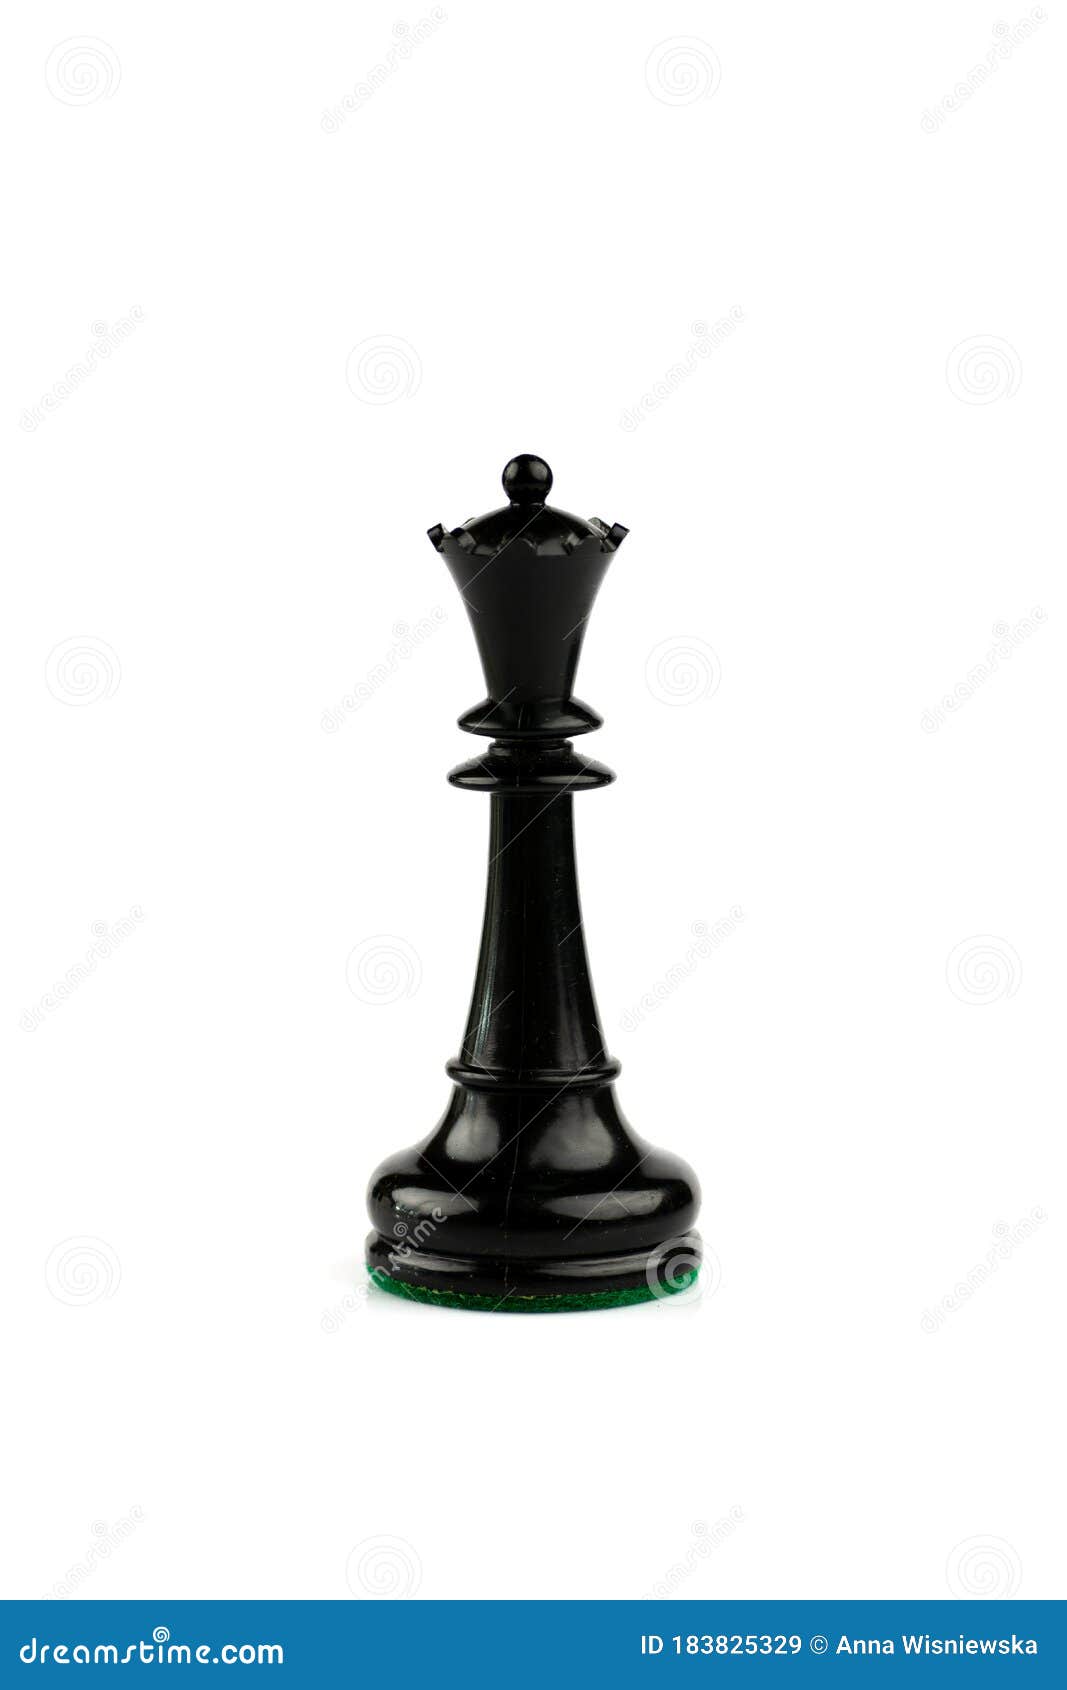 Tabuleiro de xadrez, peças de xadrez e closeup de relógio de